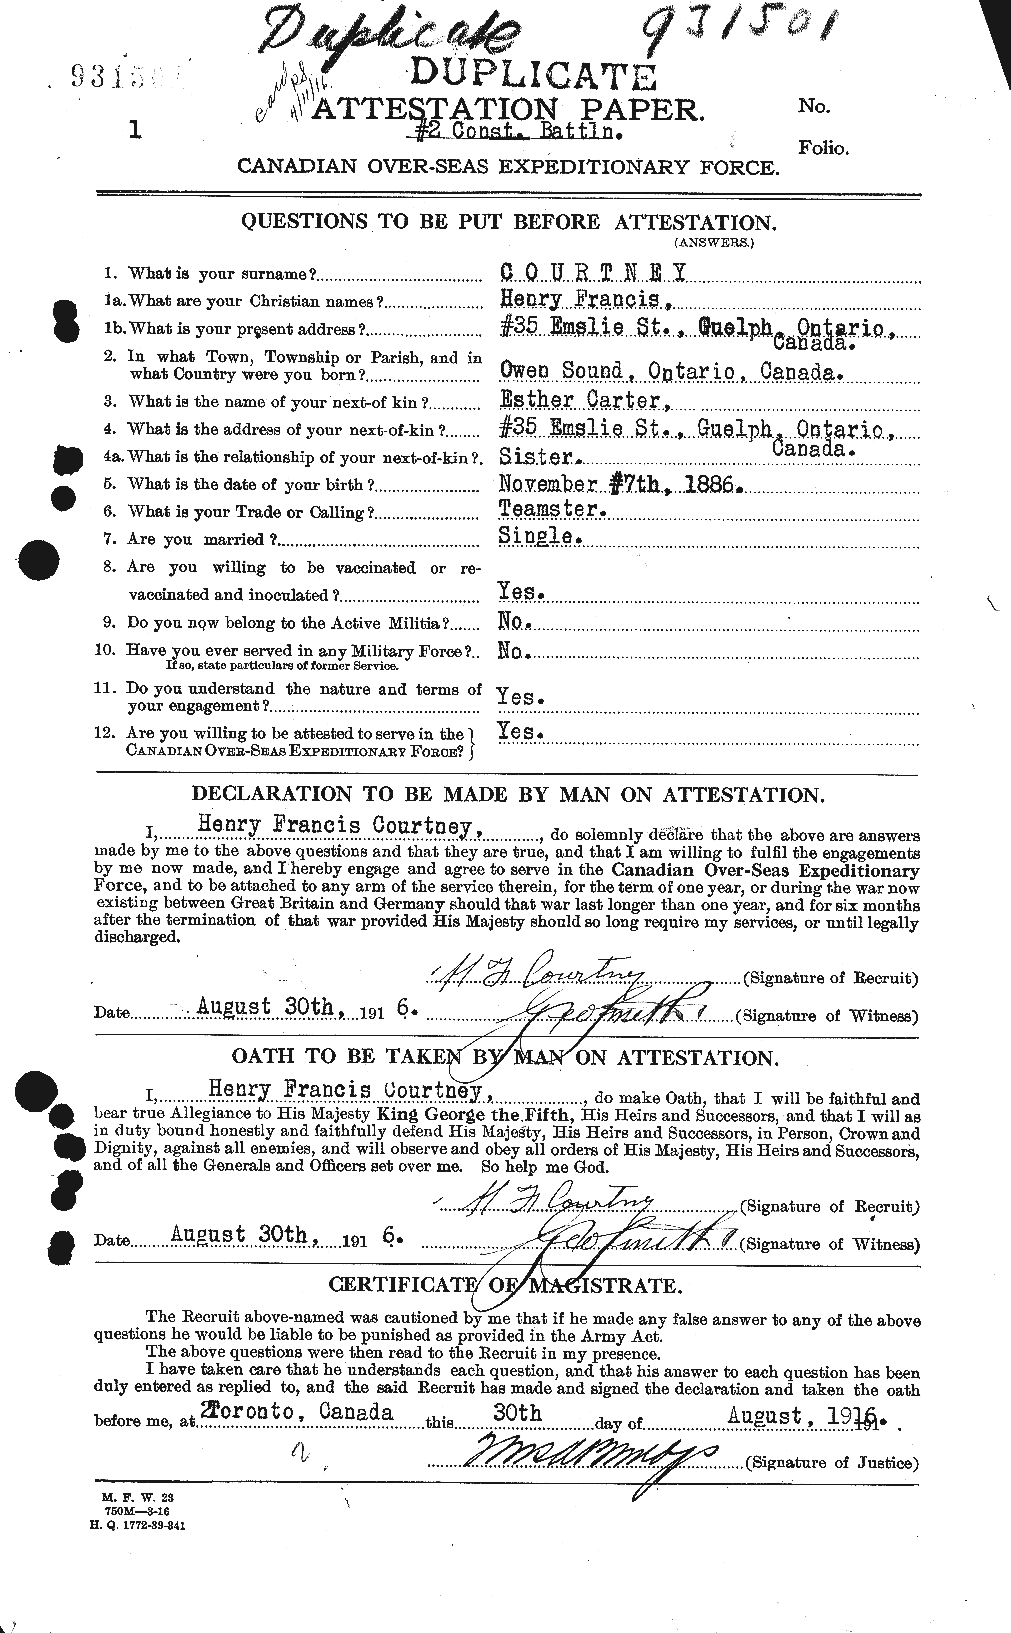 Dossiers du Personnel de la Première Guerre mondiale - CEC 059240a